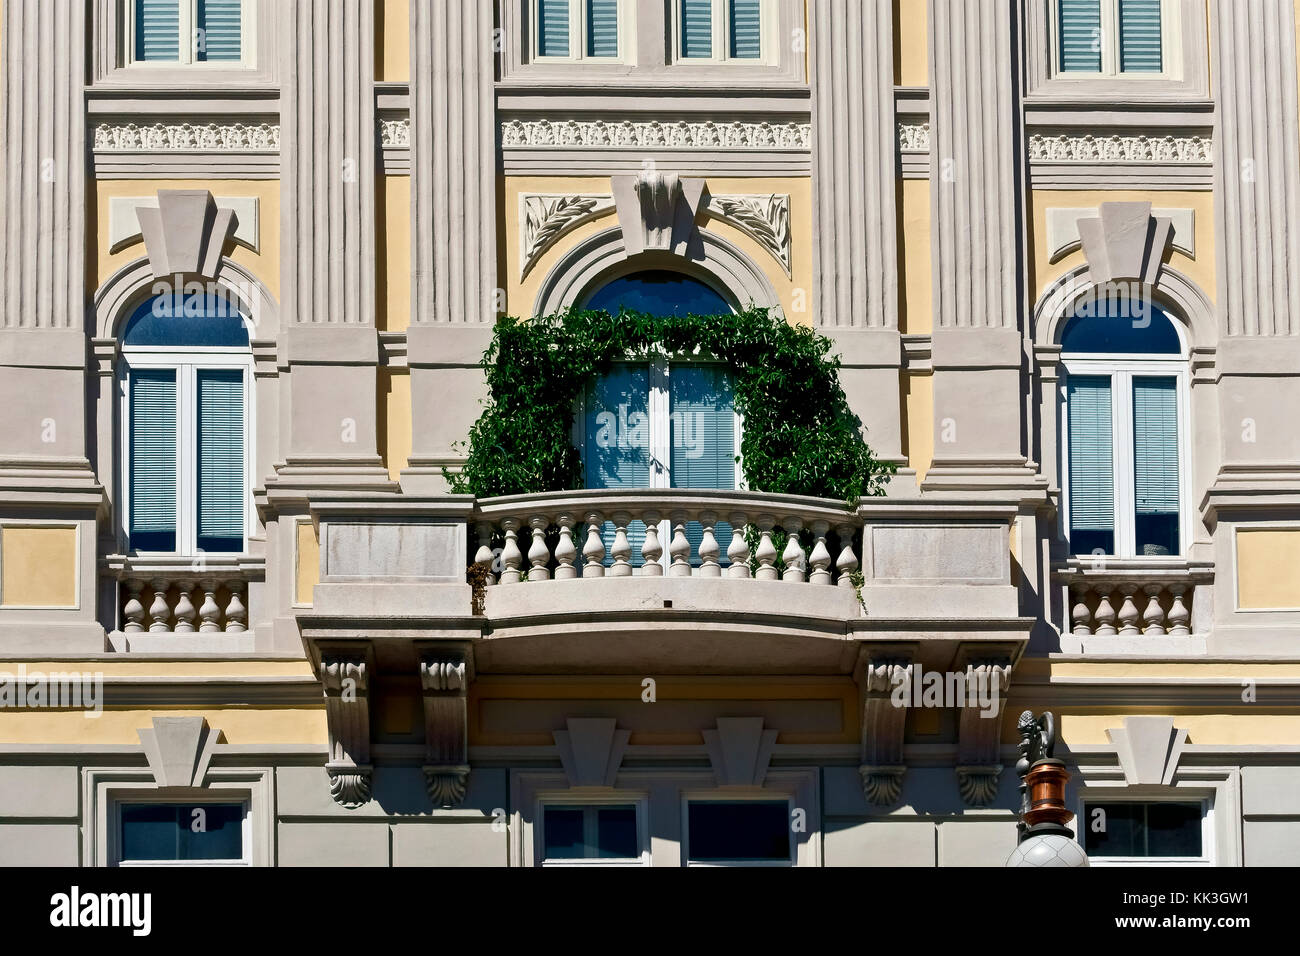 Trieste Gebäude außen, Fassade und Balustrade Balkon mit Kletterpflanzen, in Piazza della Borsa.Trieste, Friaul Julisch Venetien, Italien. Nahaufnahme. Stockfoto